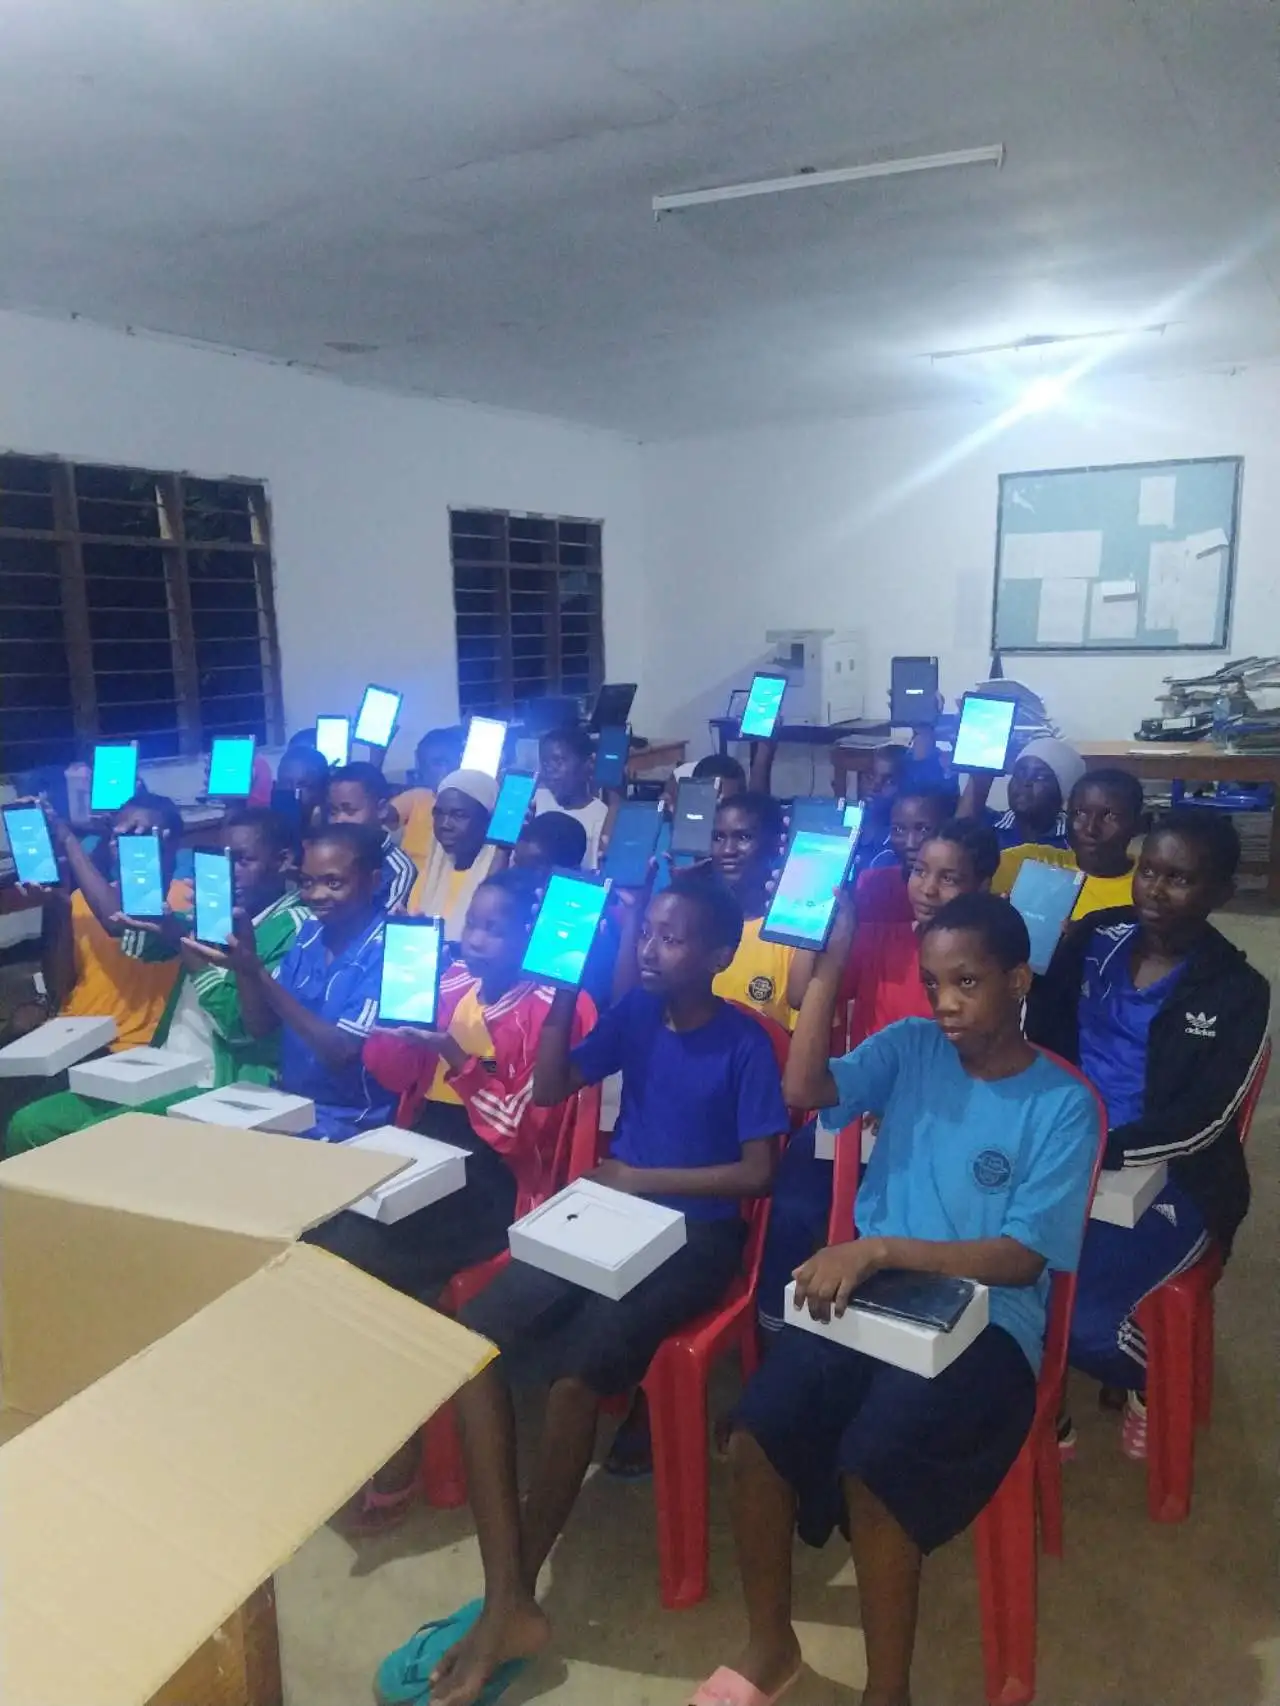 TPS slaagt erin 10.000 8-inch onderwijstablets te leveren aan Tanzania